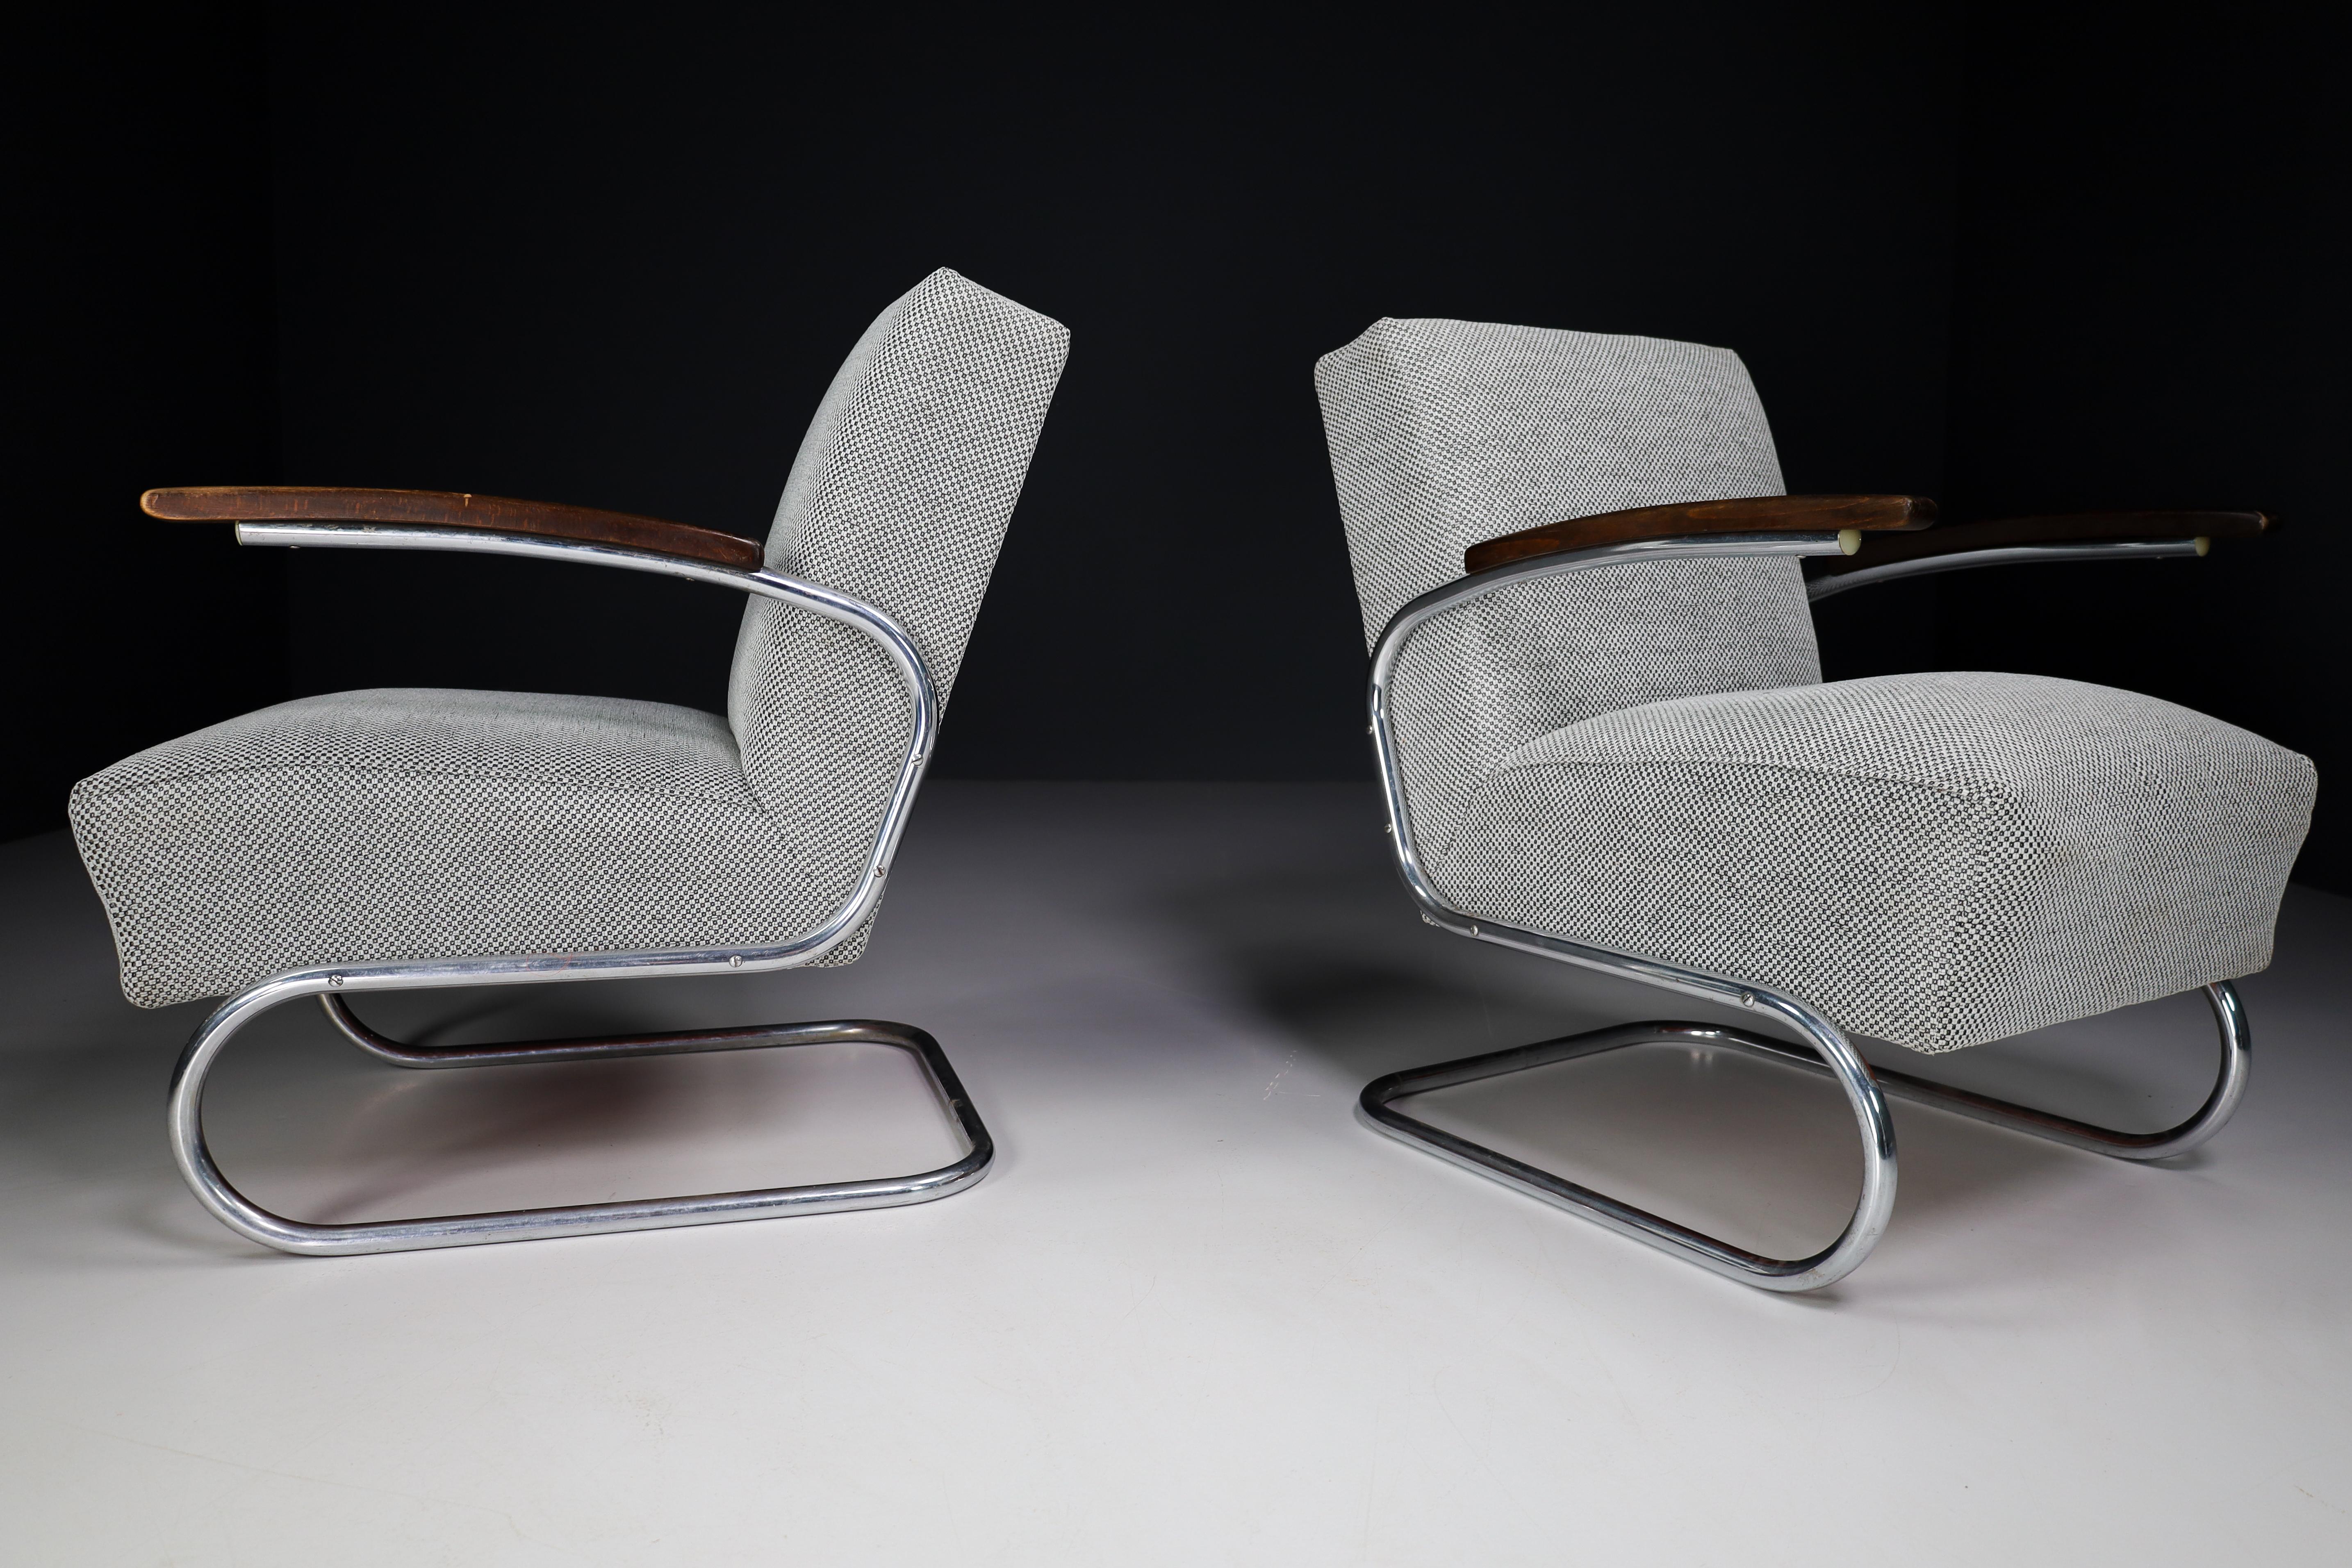 Fauteuils modèle S411 de Thonet, circa 1930, période Bauhaus du milieu du siècle. Ces fauteuils en porte-à-faux sont typiques de l'époque du Bauhaus en Allemagne et en Europe de l'Est. Ces fauteuils ont une structure en acier tubulaire et sont